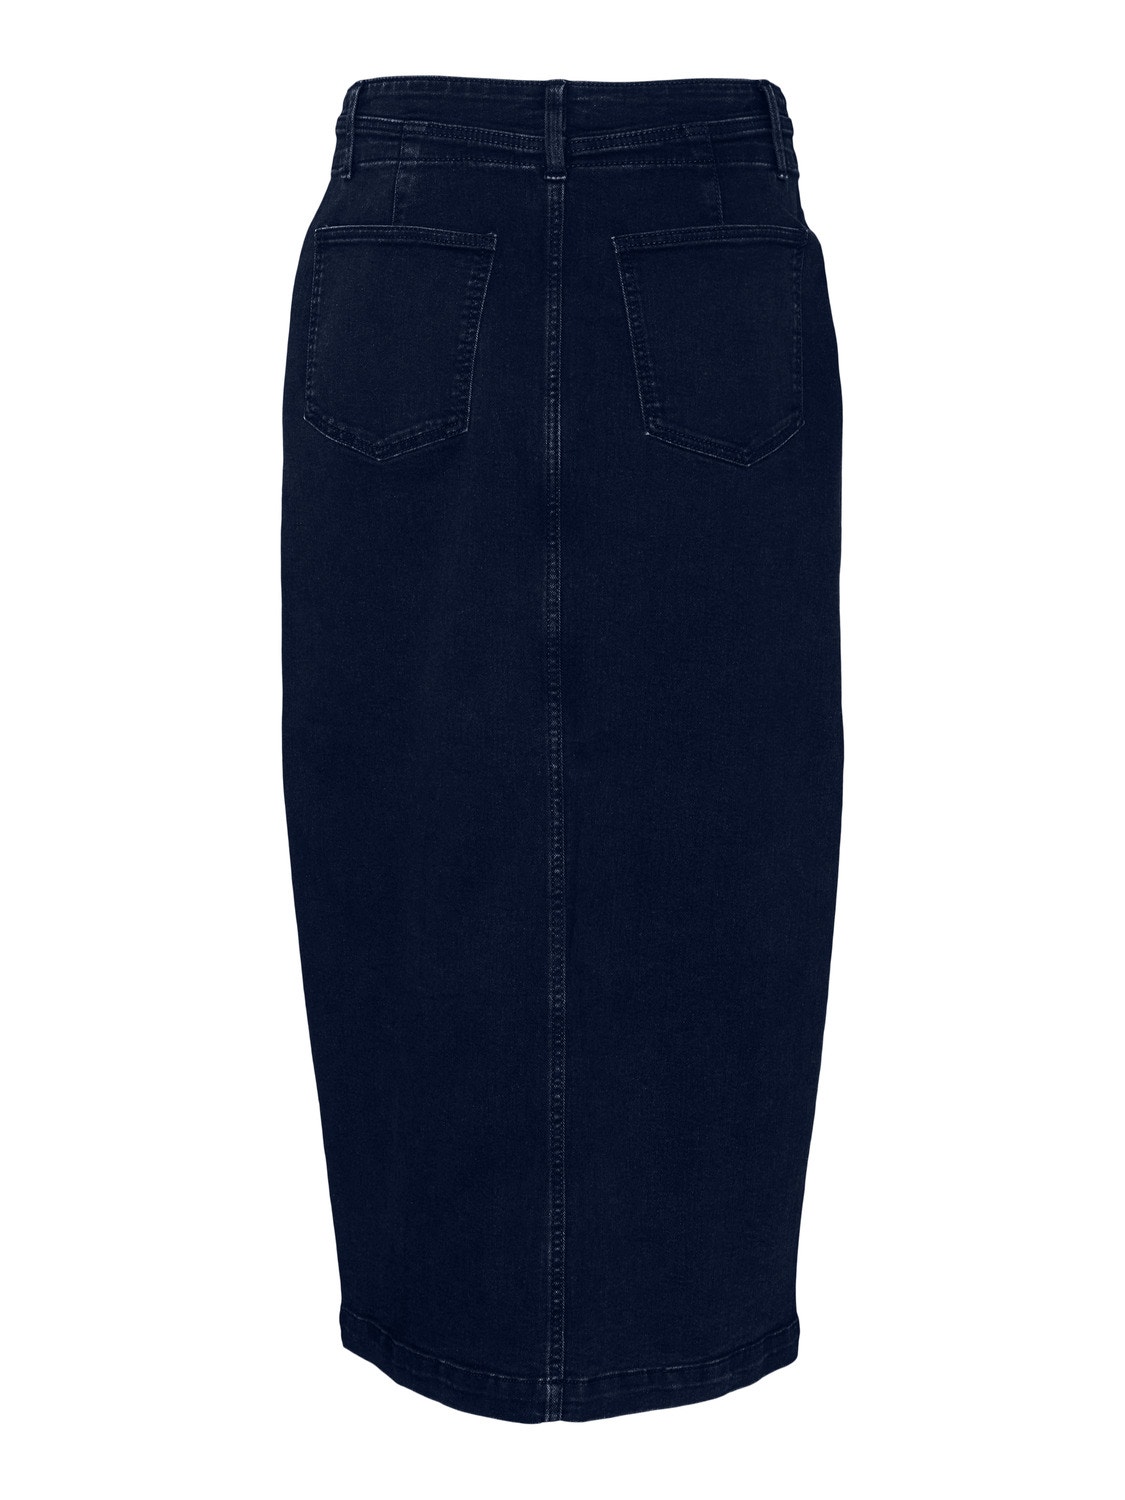 Vero Moda VMPEYTON Midi skirt -Dark Blue Denim - 10305465